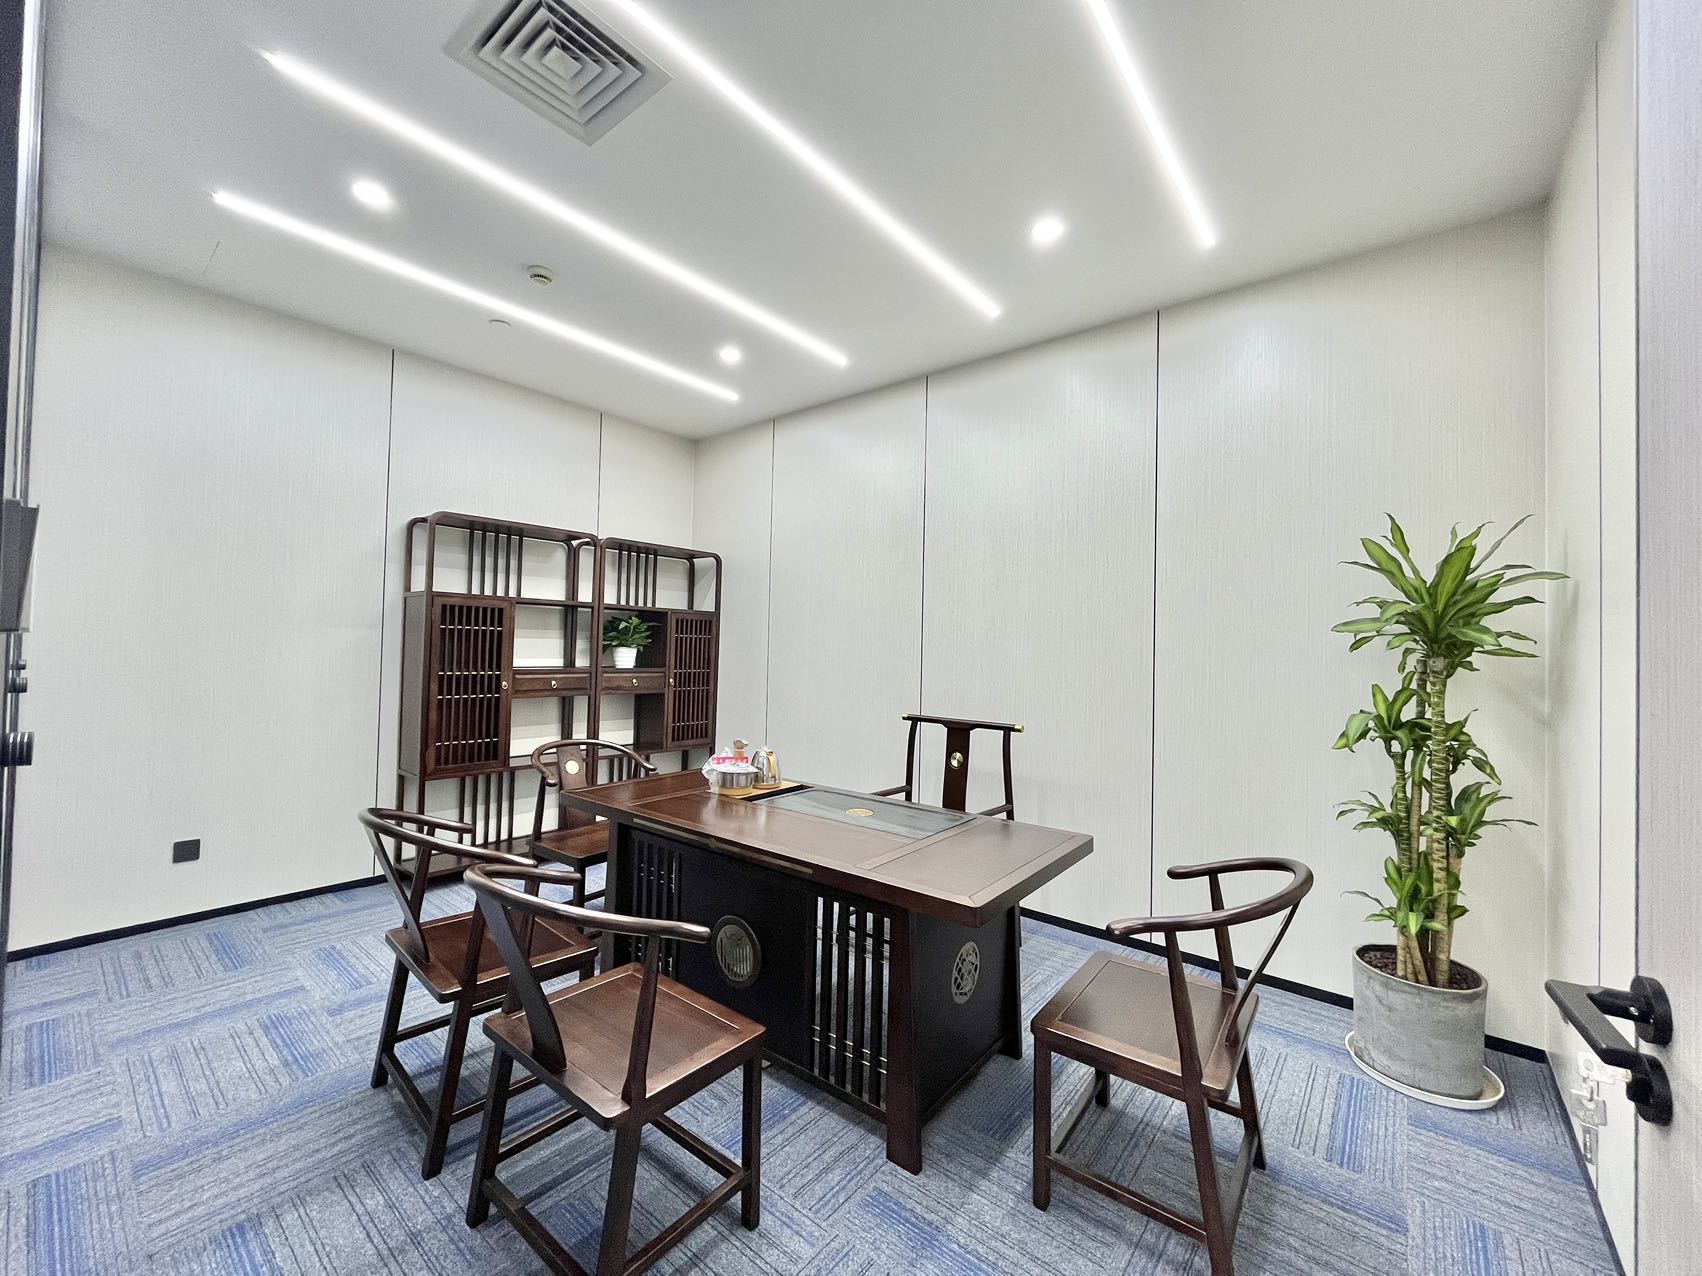 黄埔区双地铁口附近新出小面积办公室招租面积80~500方。